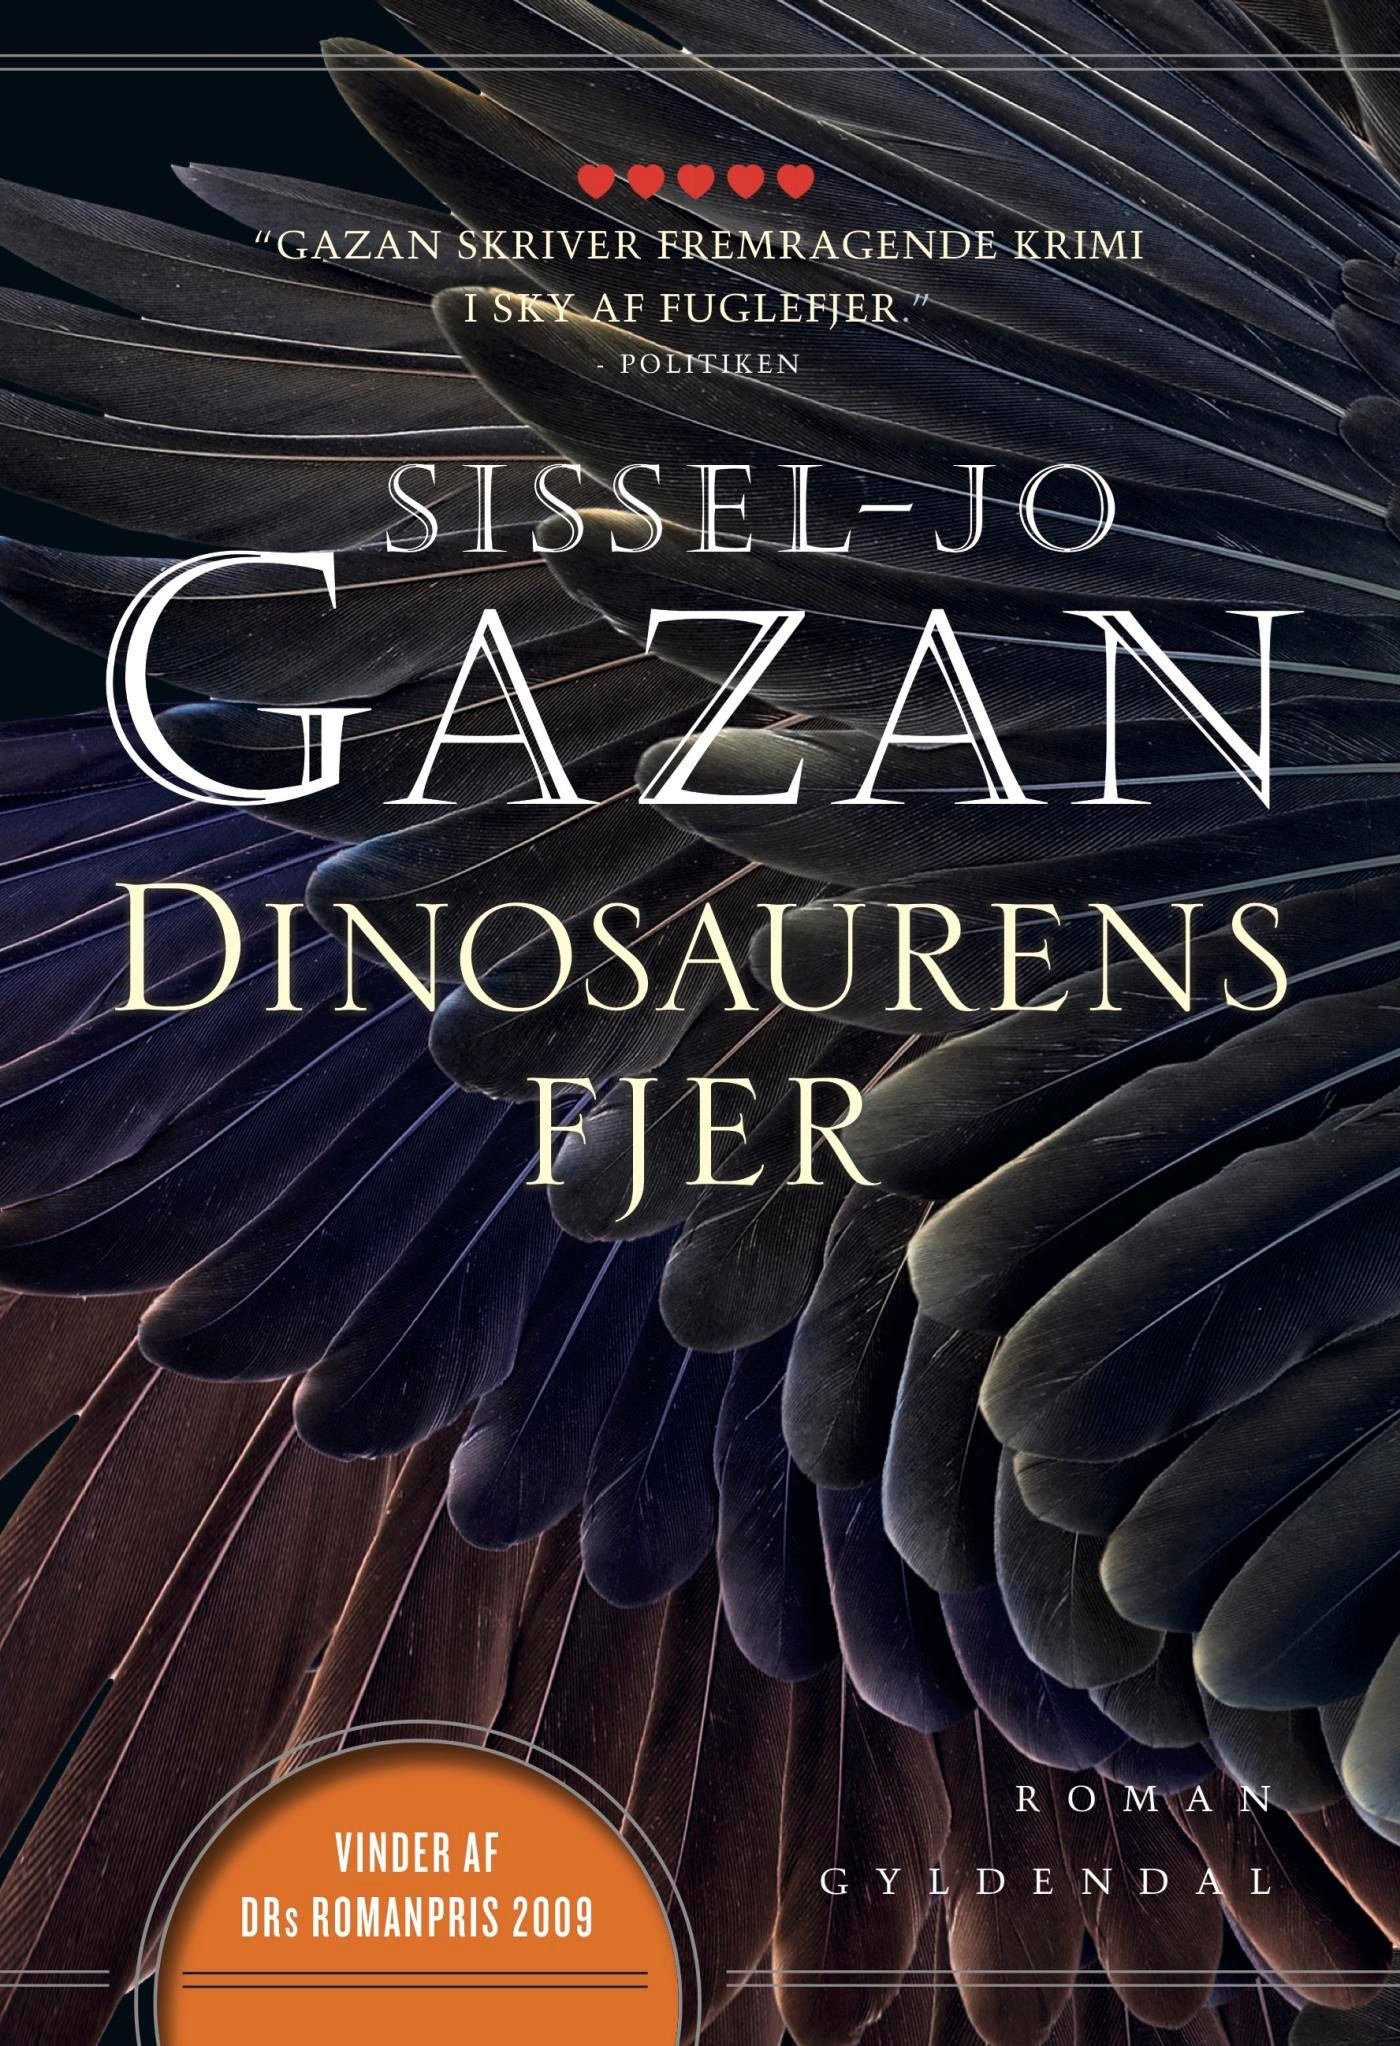 Dinosaurens fjer, e-bok av Sissel-Jo Gazan